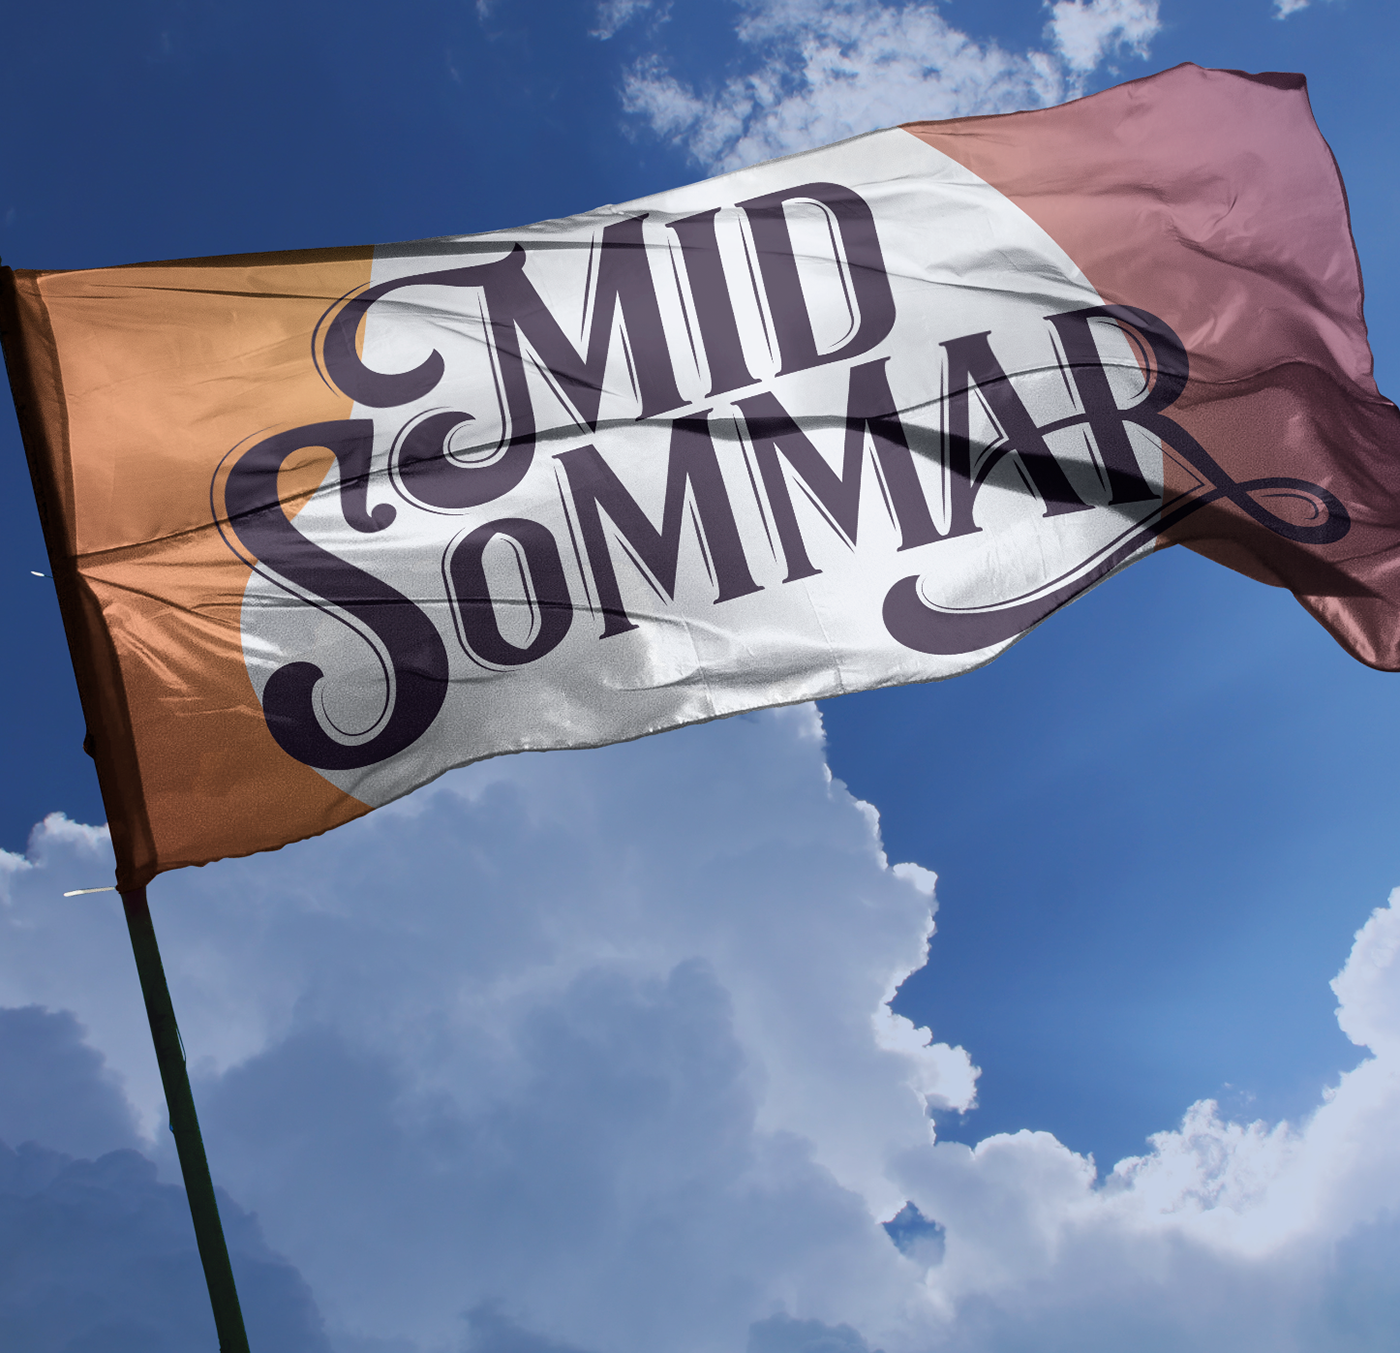 midsommar festival summer poster absolut